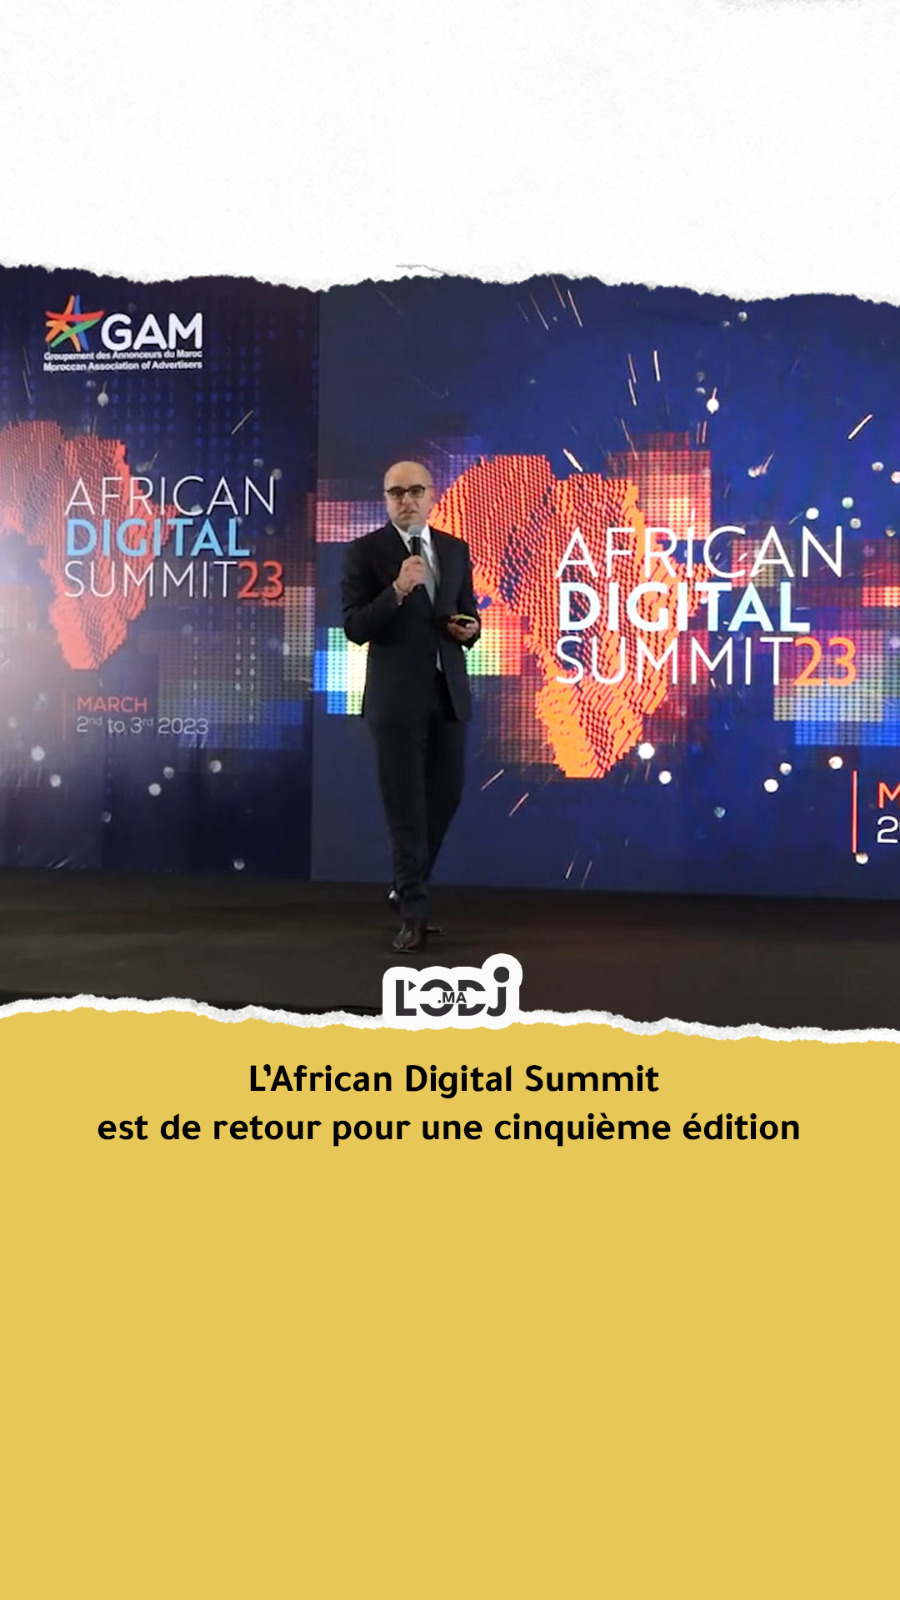 L’African Digital Summit est de retour pour une cinquième édition